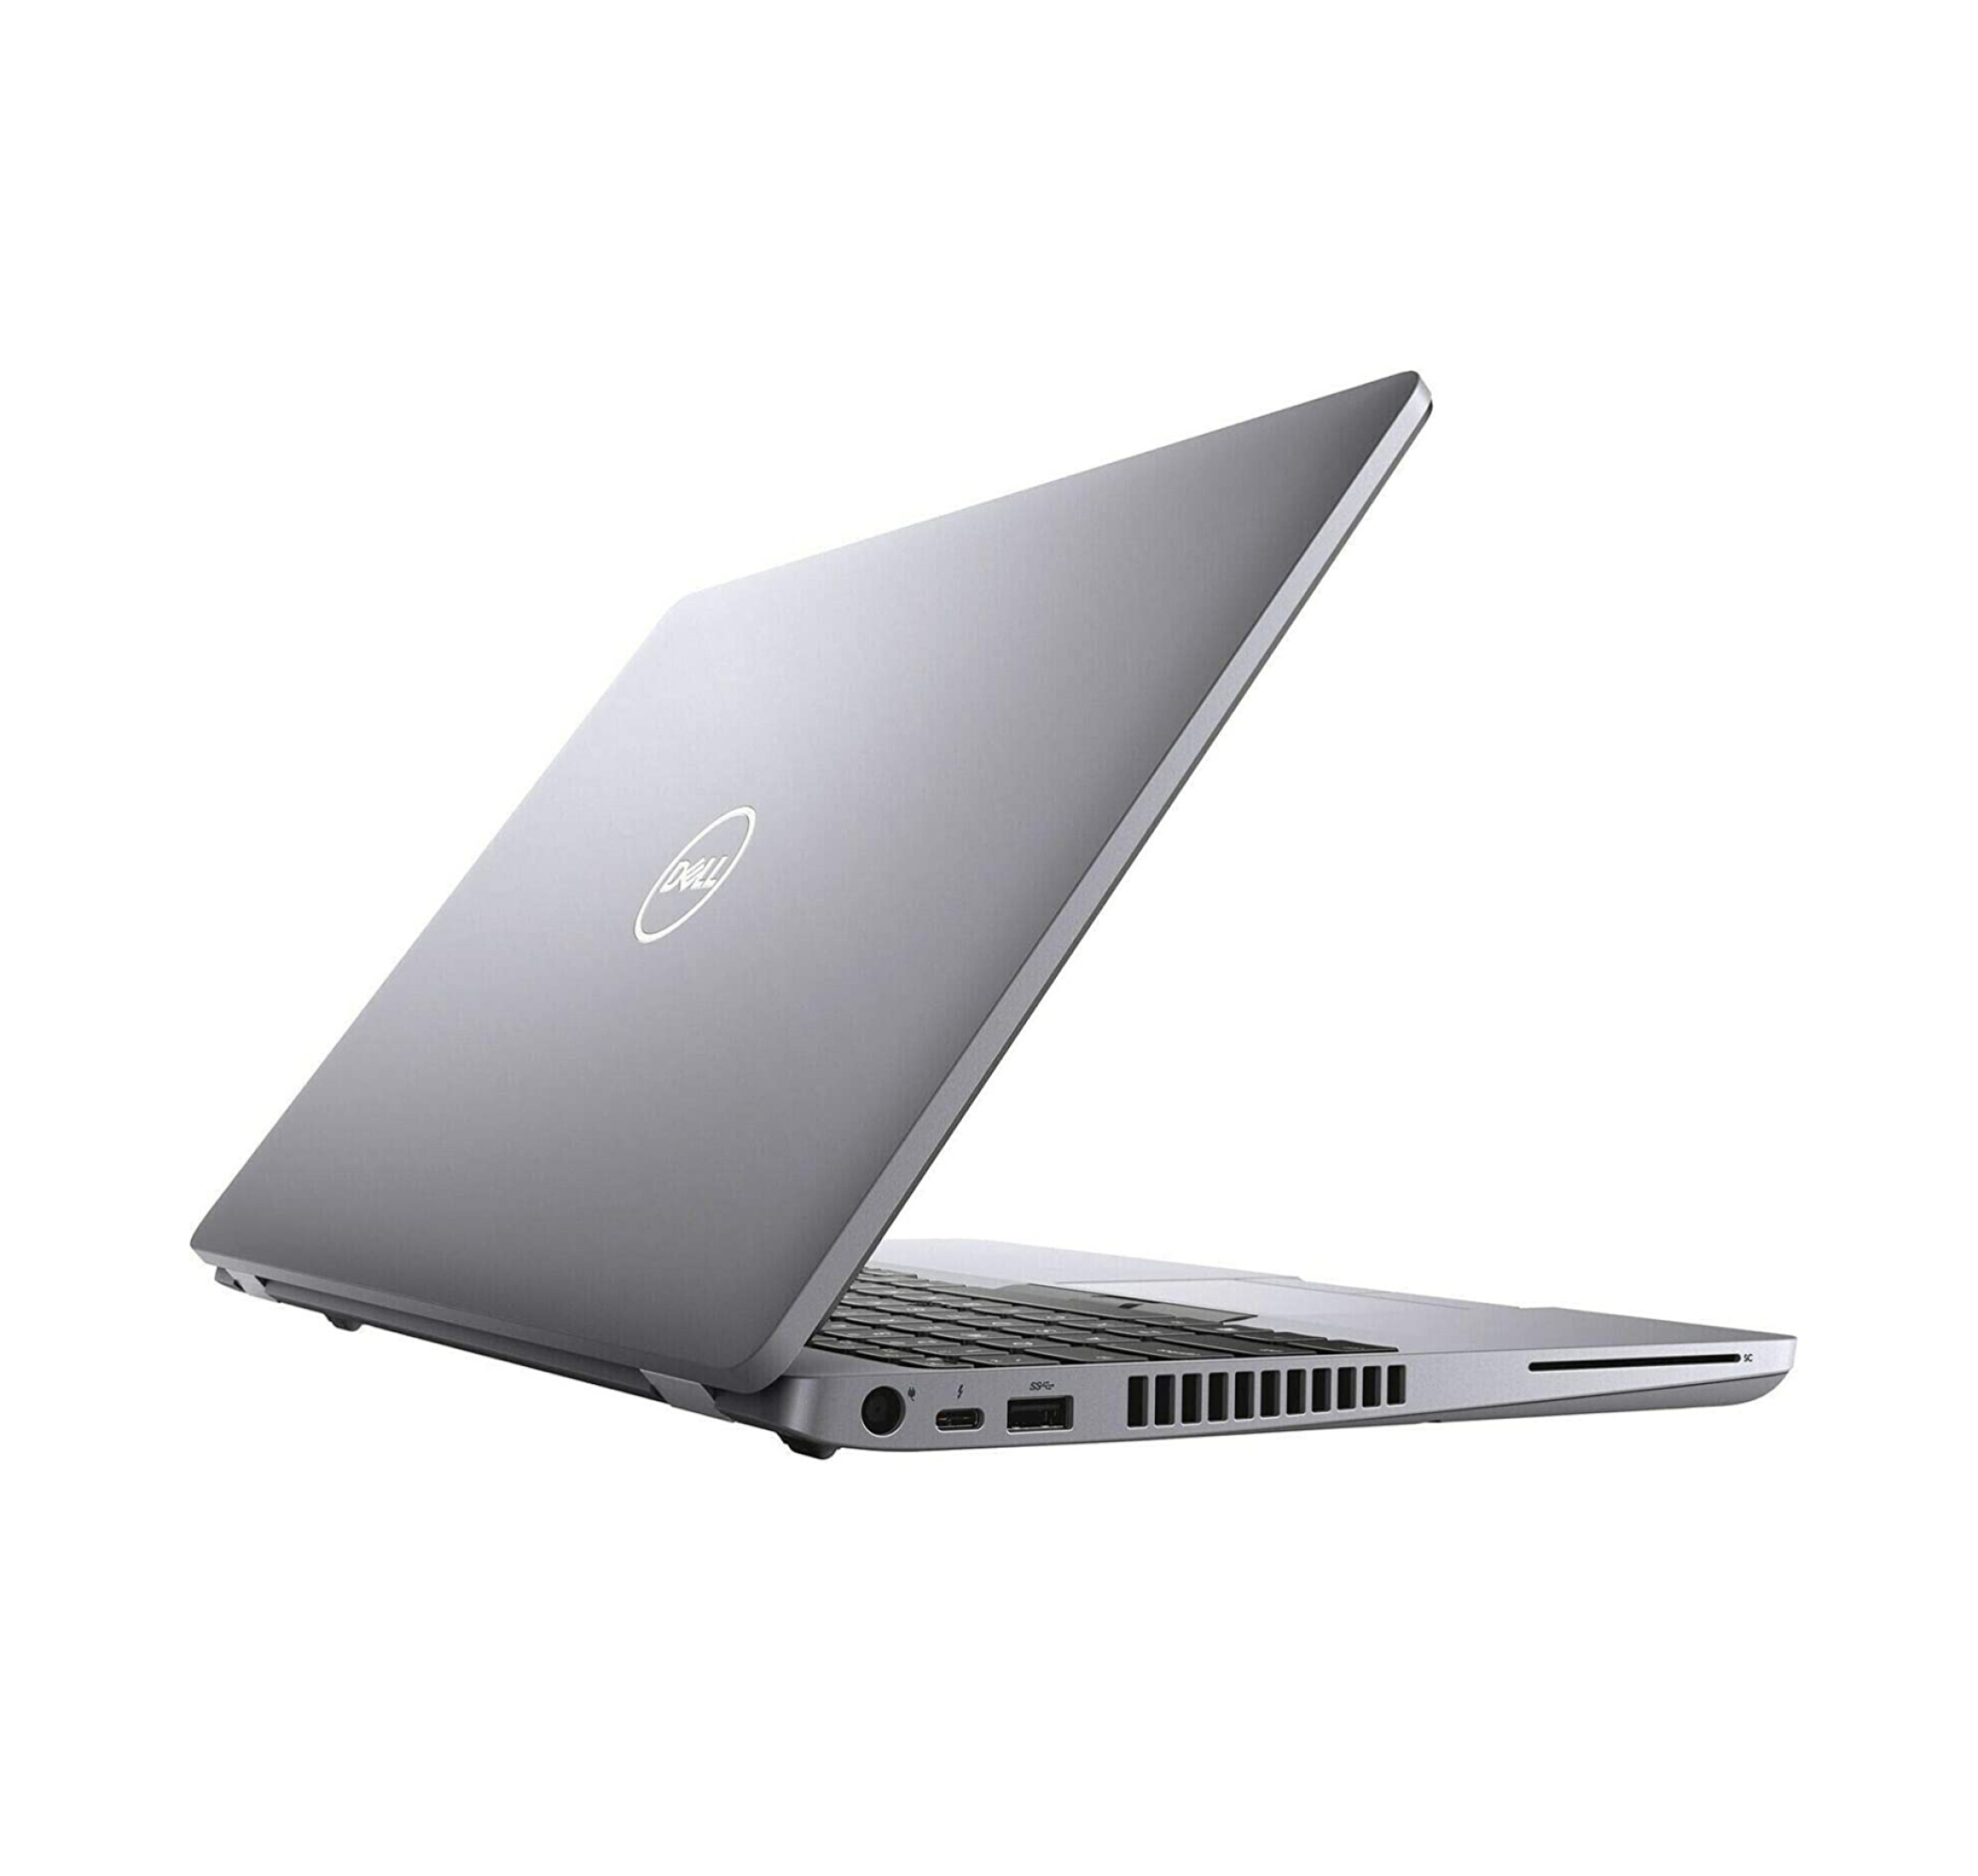  خرید و قیمت لپ تاپ دل Dell Precision 3551 - i7 10875H | لاکچری لپتاپ 